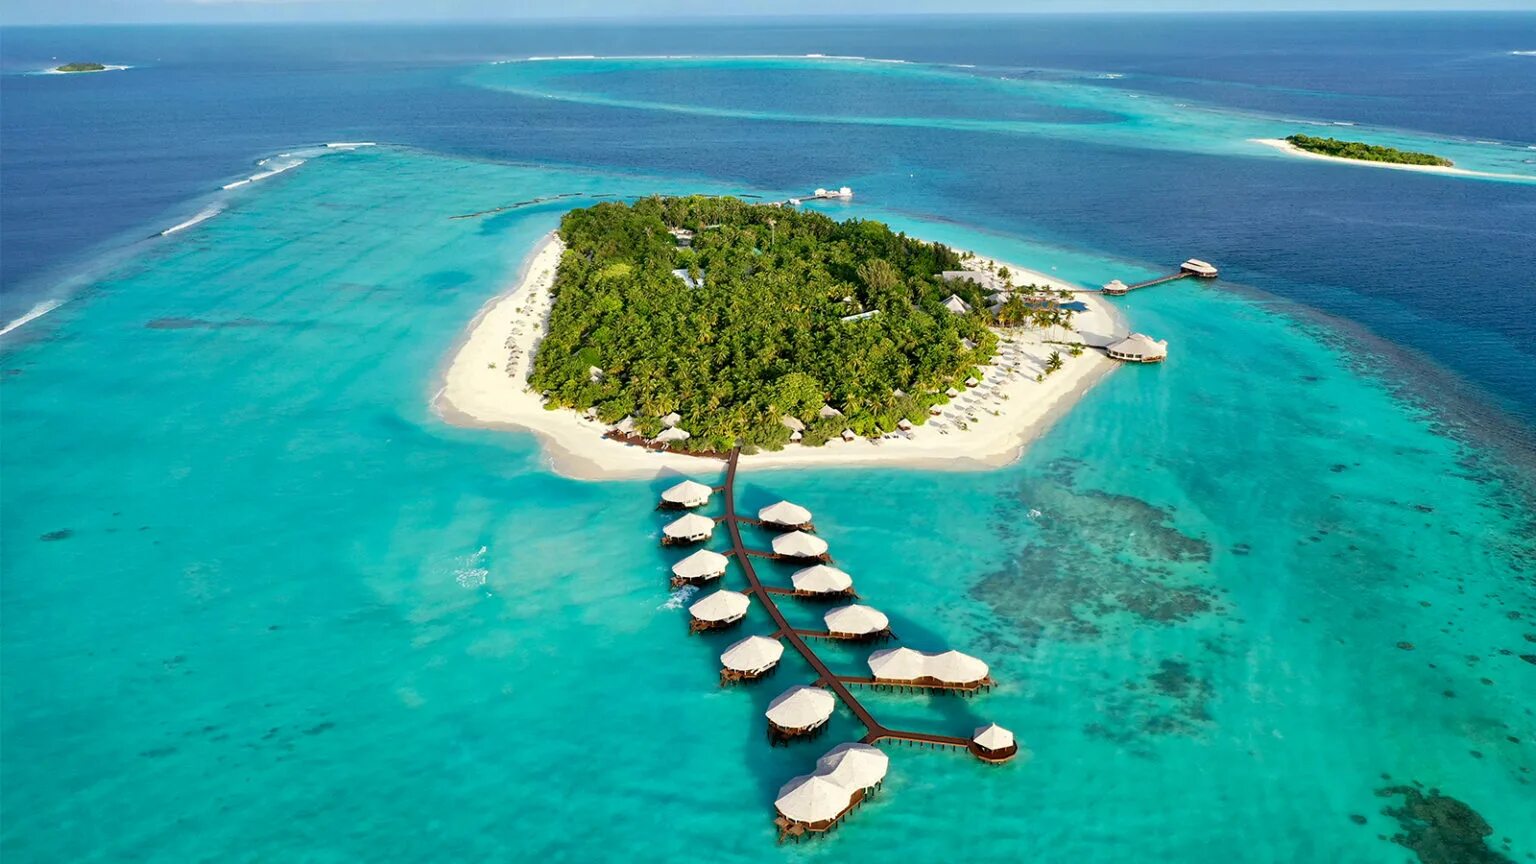 Баа Атолл Мальдивы. Атолл Баа Мальдивы ЮНЕСКО. Кихаа Мальдивы. Остров Курумба Мальдивы. Perfect island